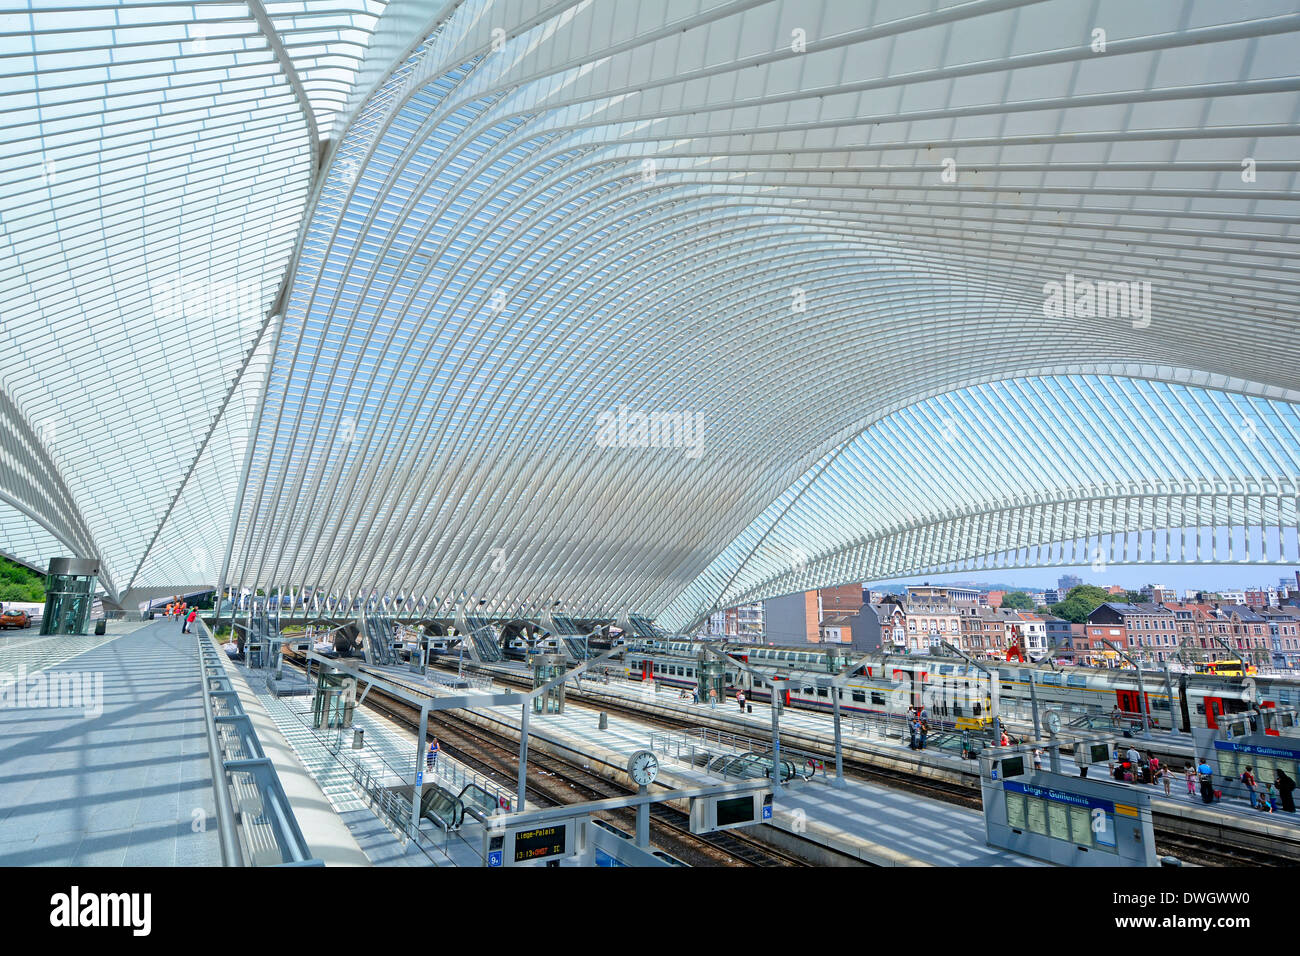 Gläserne Decke im modernen Infrastruktur des öffentlichen Verkehrs Gebäude gekrümmte über Belgien Bahnhof Railway Track & Plattform Stadt Lüttich EU über Stockfoto